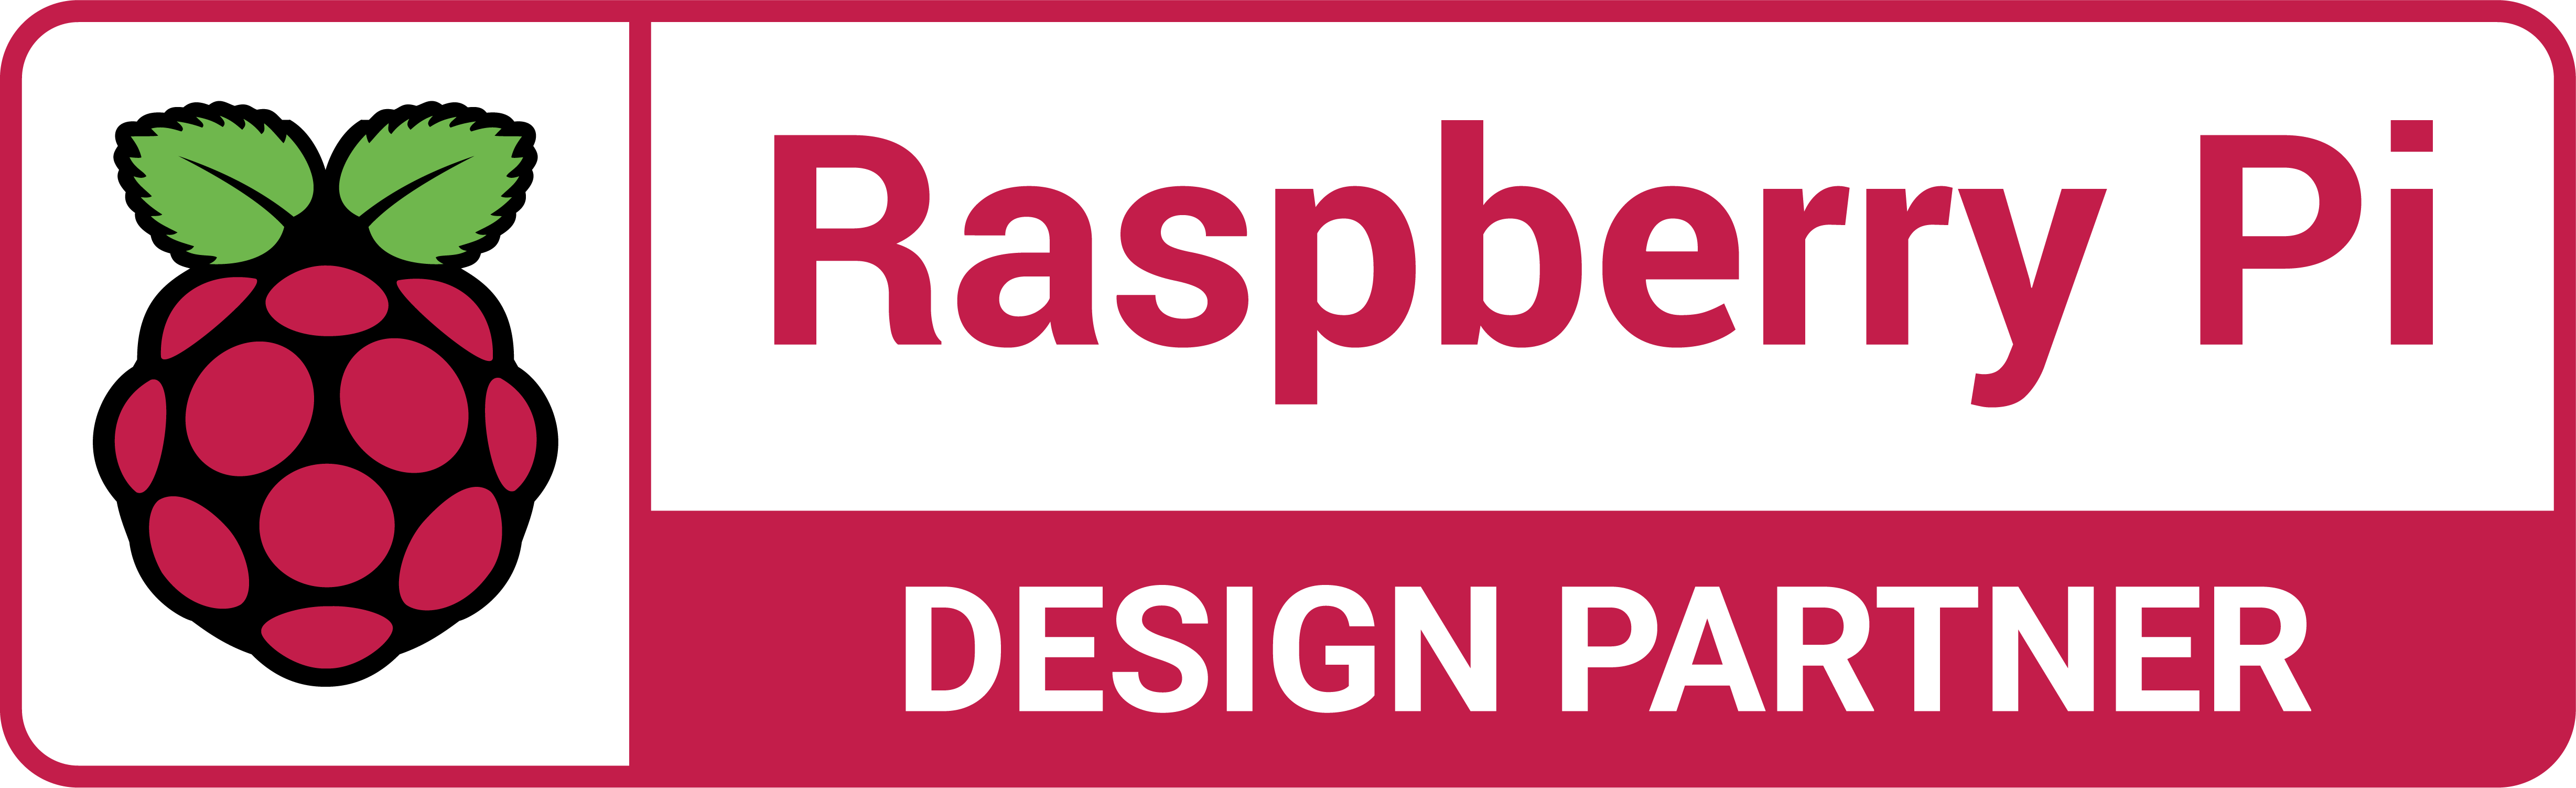 RaspberryPi Approved Design Partner